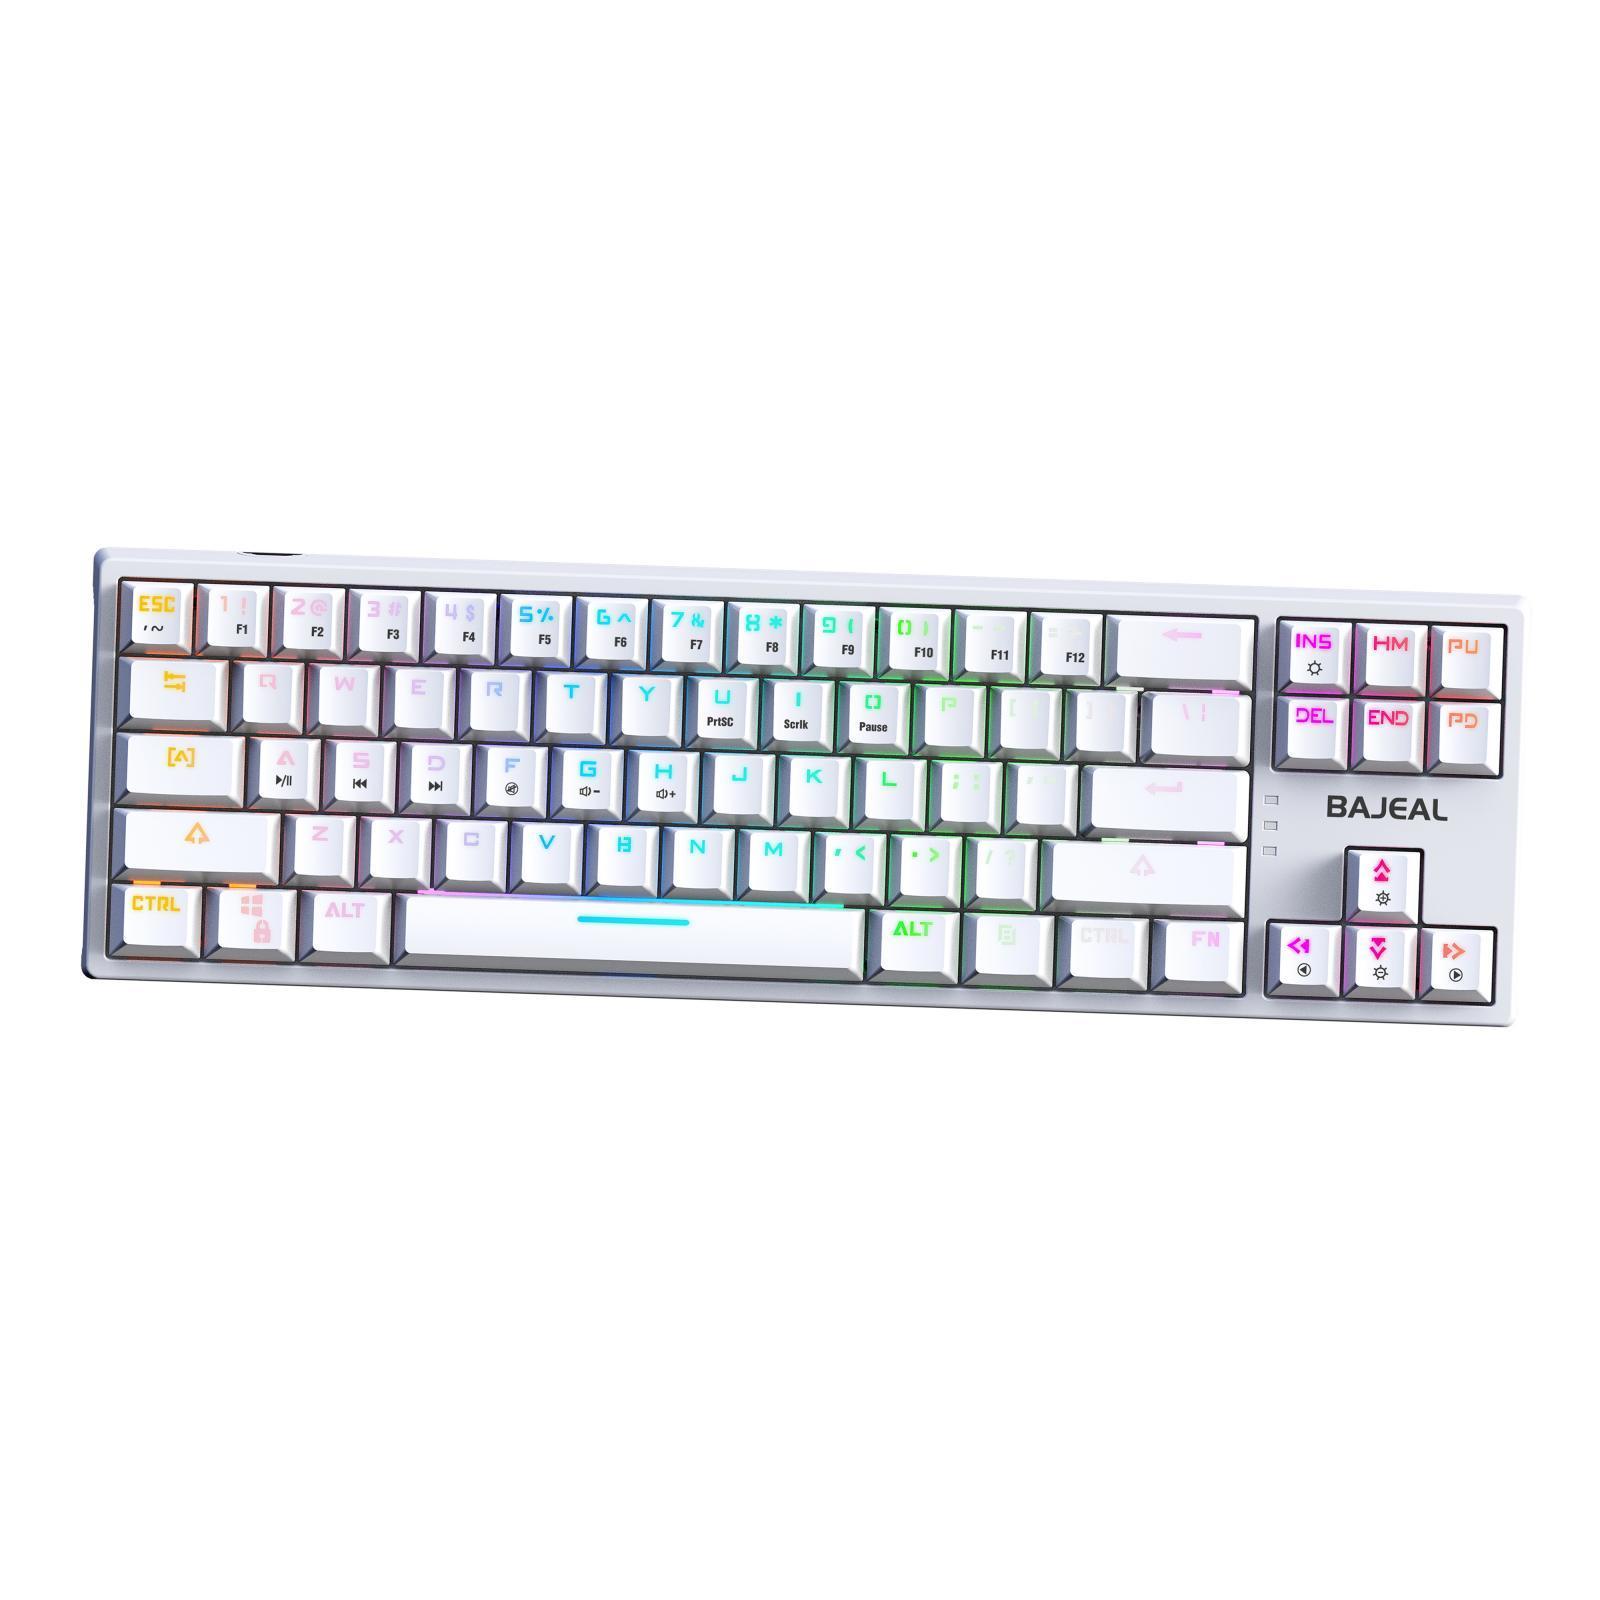 Wired Mechanical Gaming Keyboard Laptop White